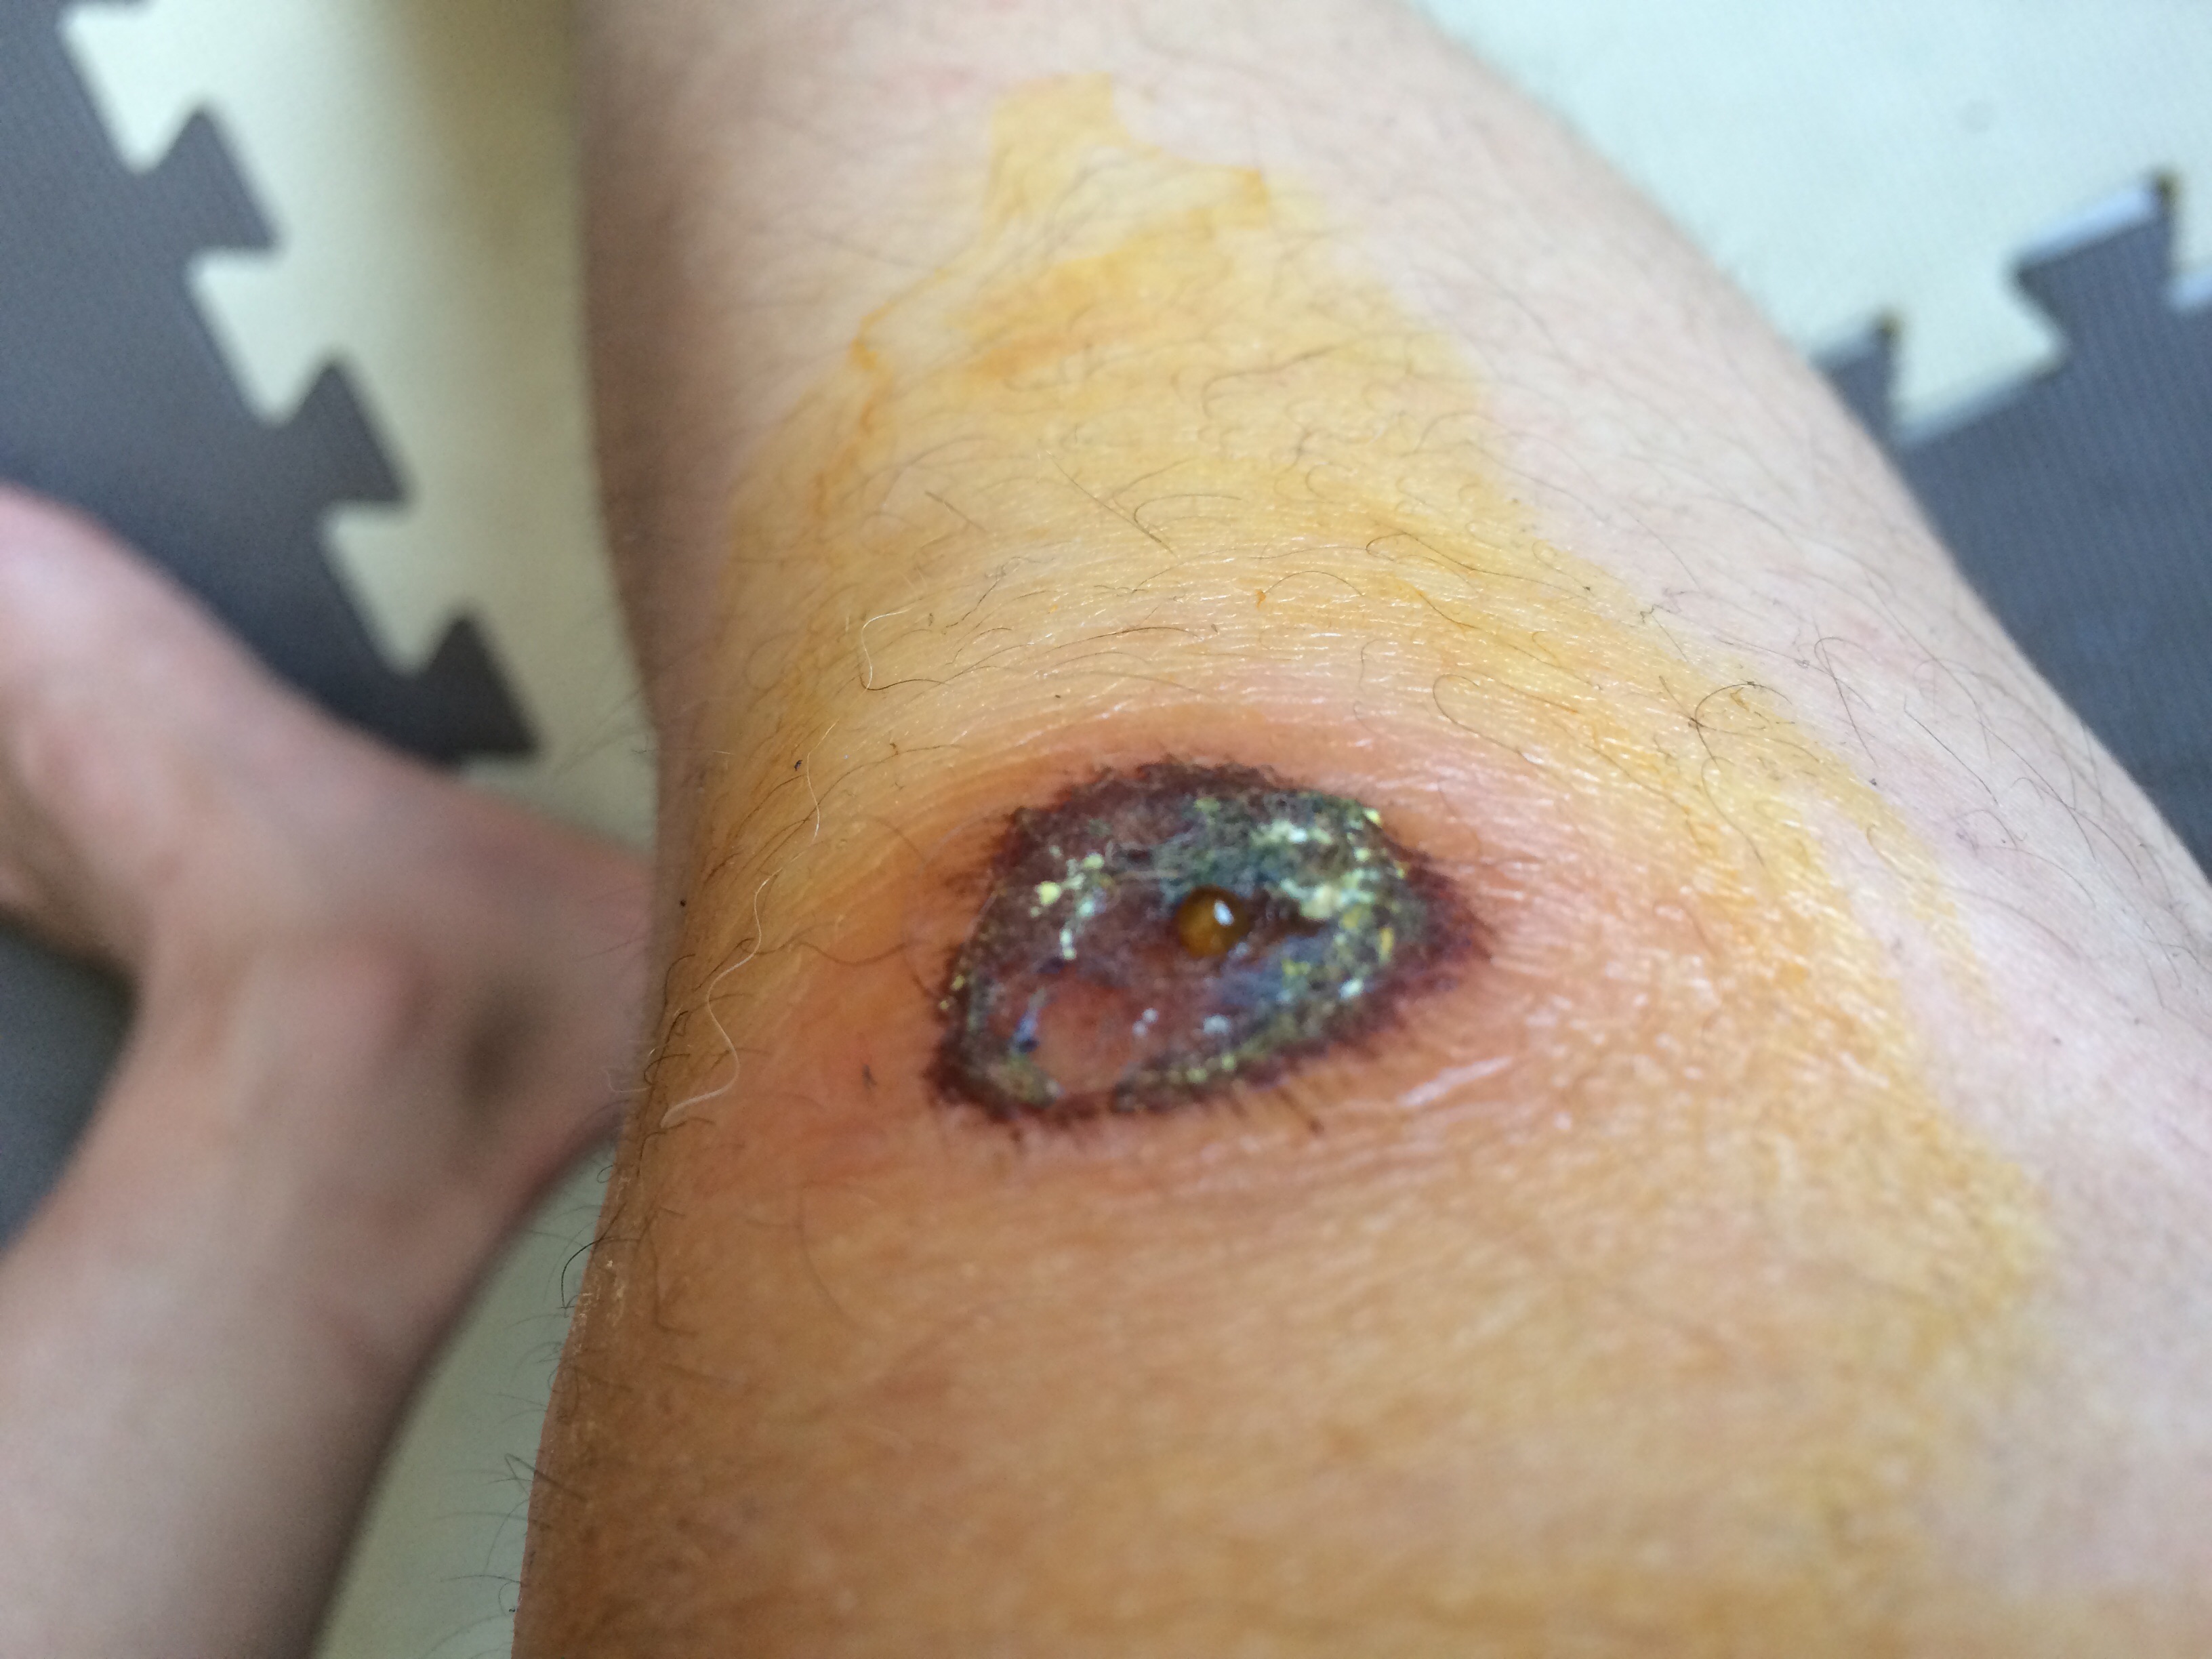 伤口感染化脓症状图片图片